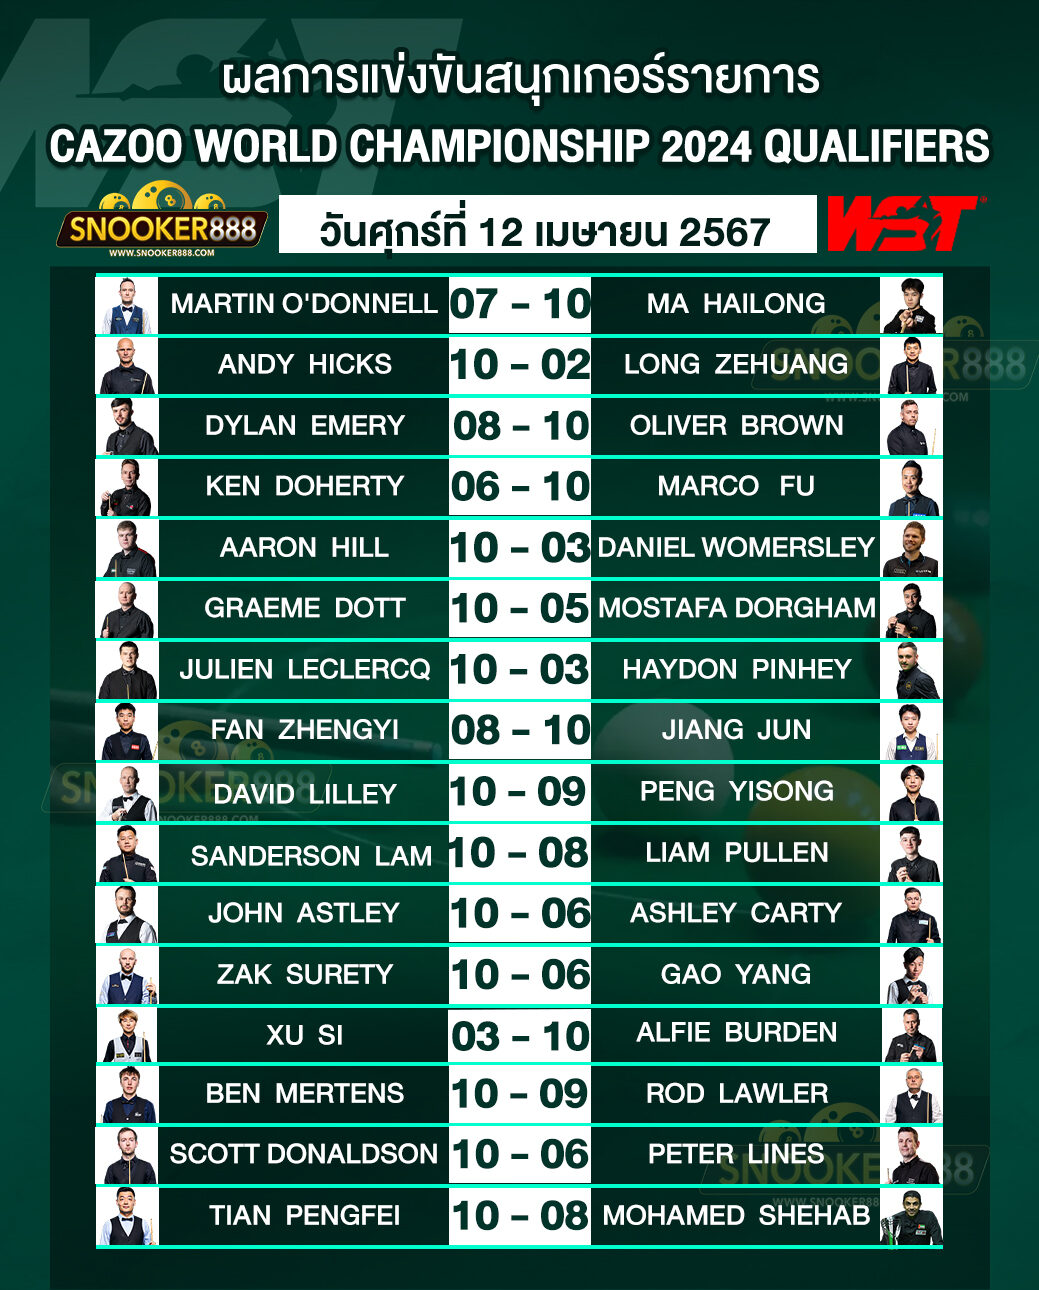 ผลการแข่งขันสนุกเกอร์ CAZOO WORLD CHAMPIONSHIP 2024 QUALIFIERS วันที่ 12 เม.ย. 67